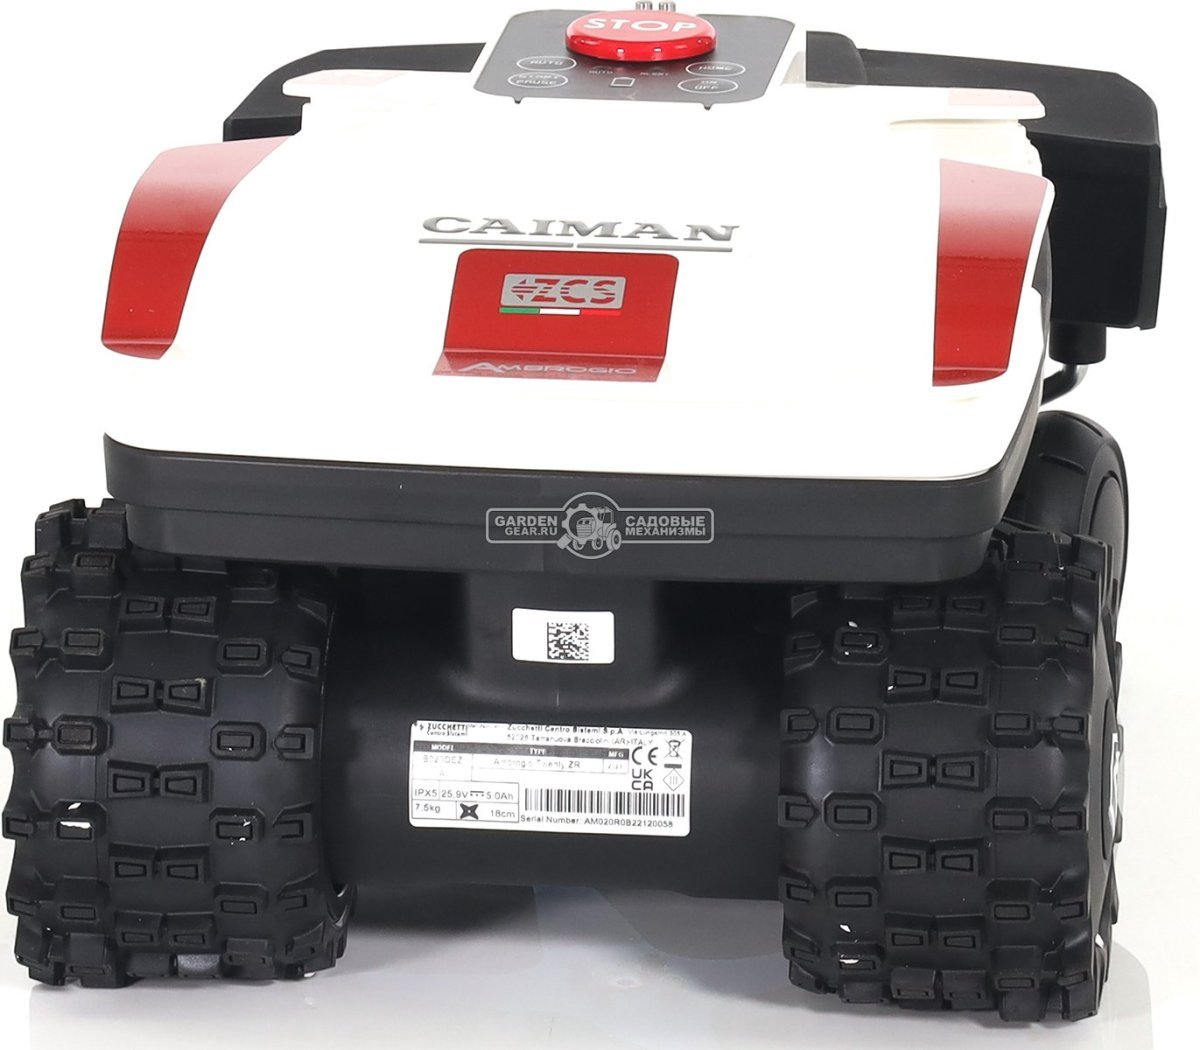 Газонокосилка робот Caiman Ambrogio Twenty Elite ZR Radar (ITA, площадь газона до 1000 м2, нож 18 см., Bluetooth, алгоритм умной стрижки, вес 7,5 кг.)